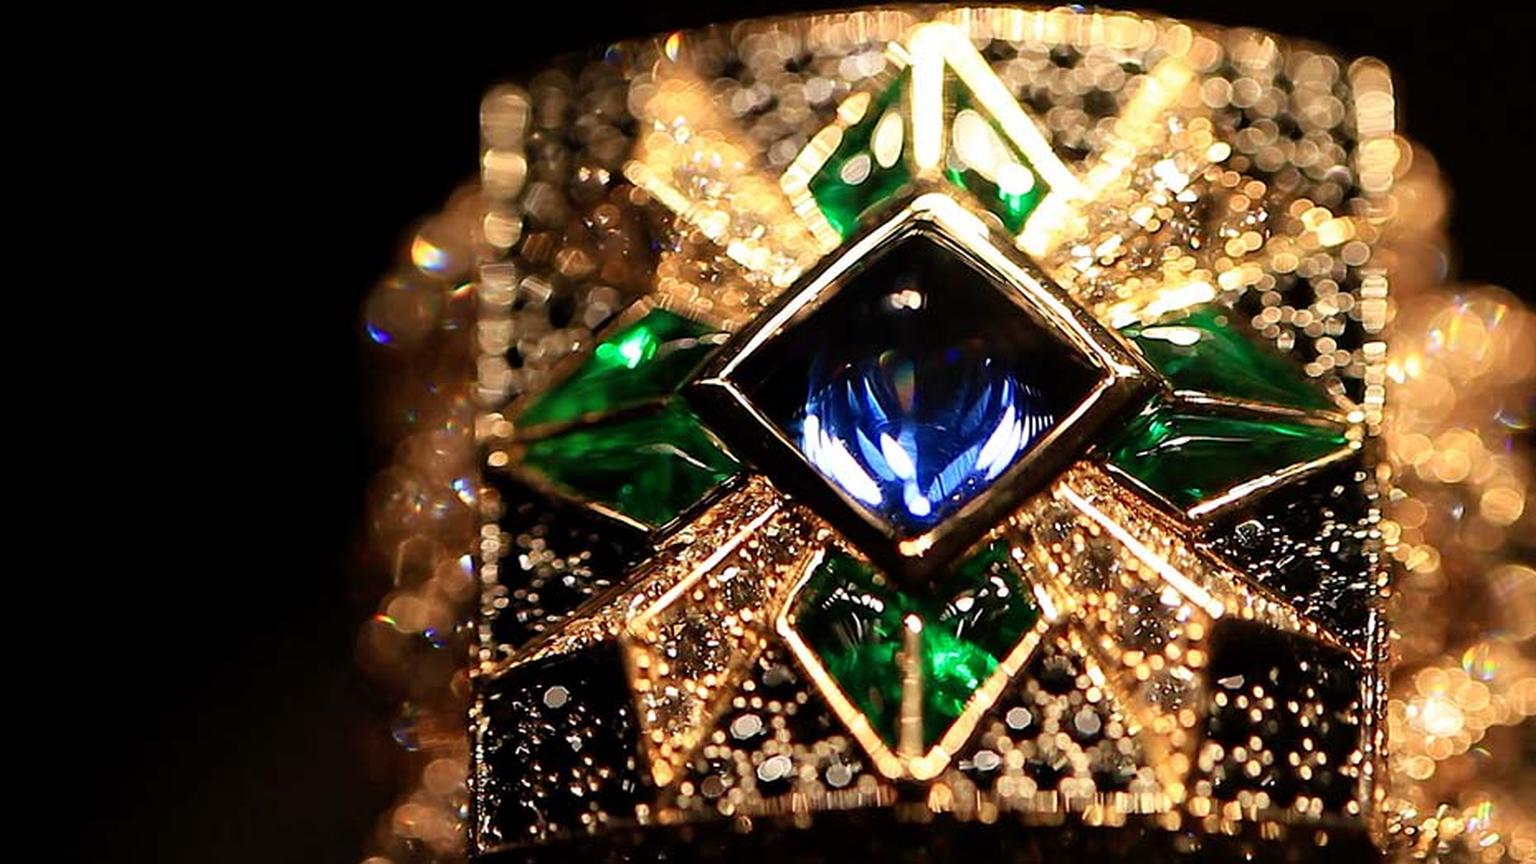 Giampiero Bodino Rosa dei Venti choker with a diamond-encrusted chain featuring coloured gemstones.